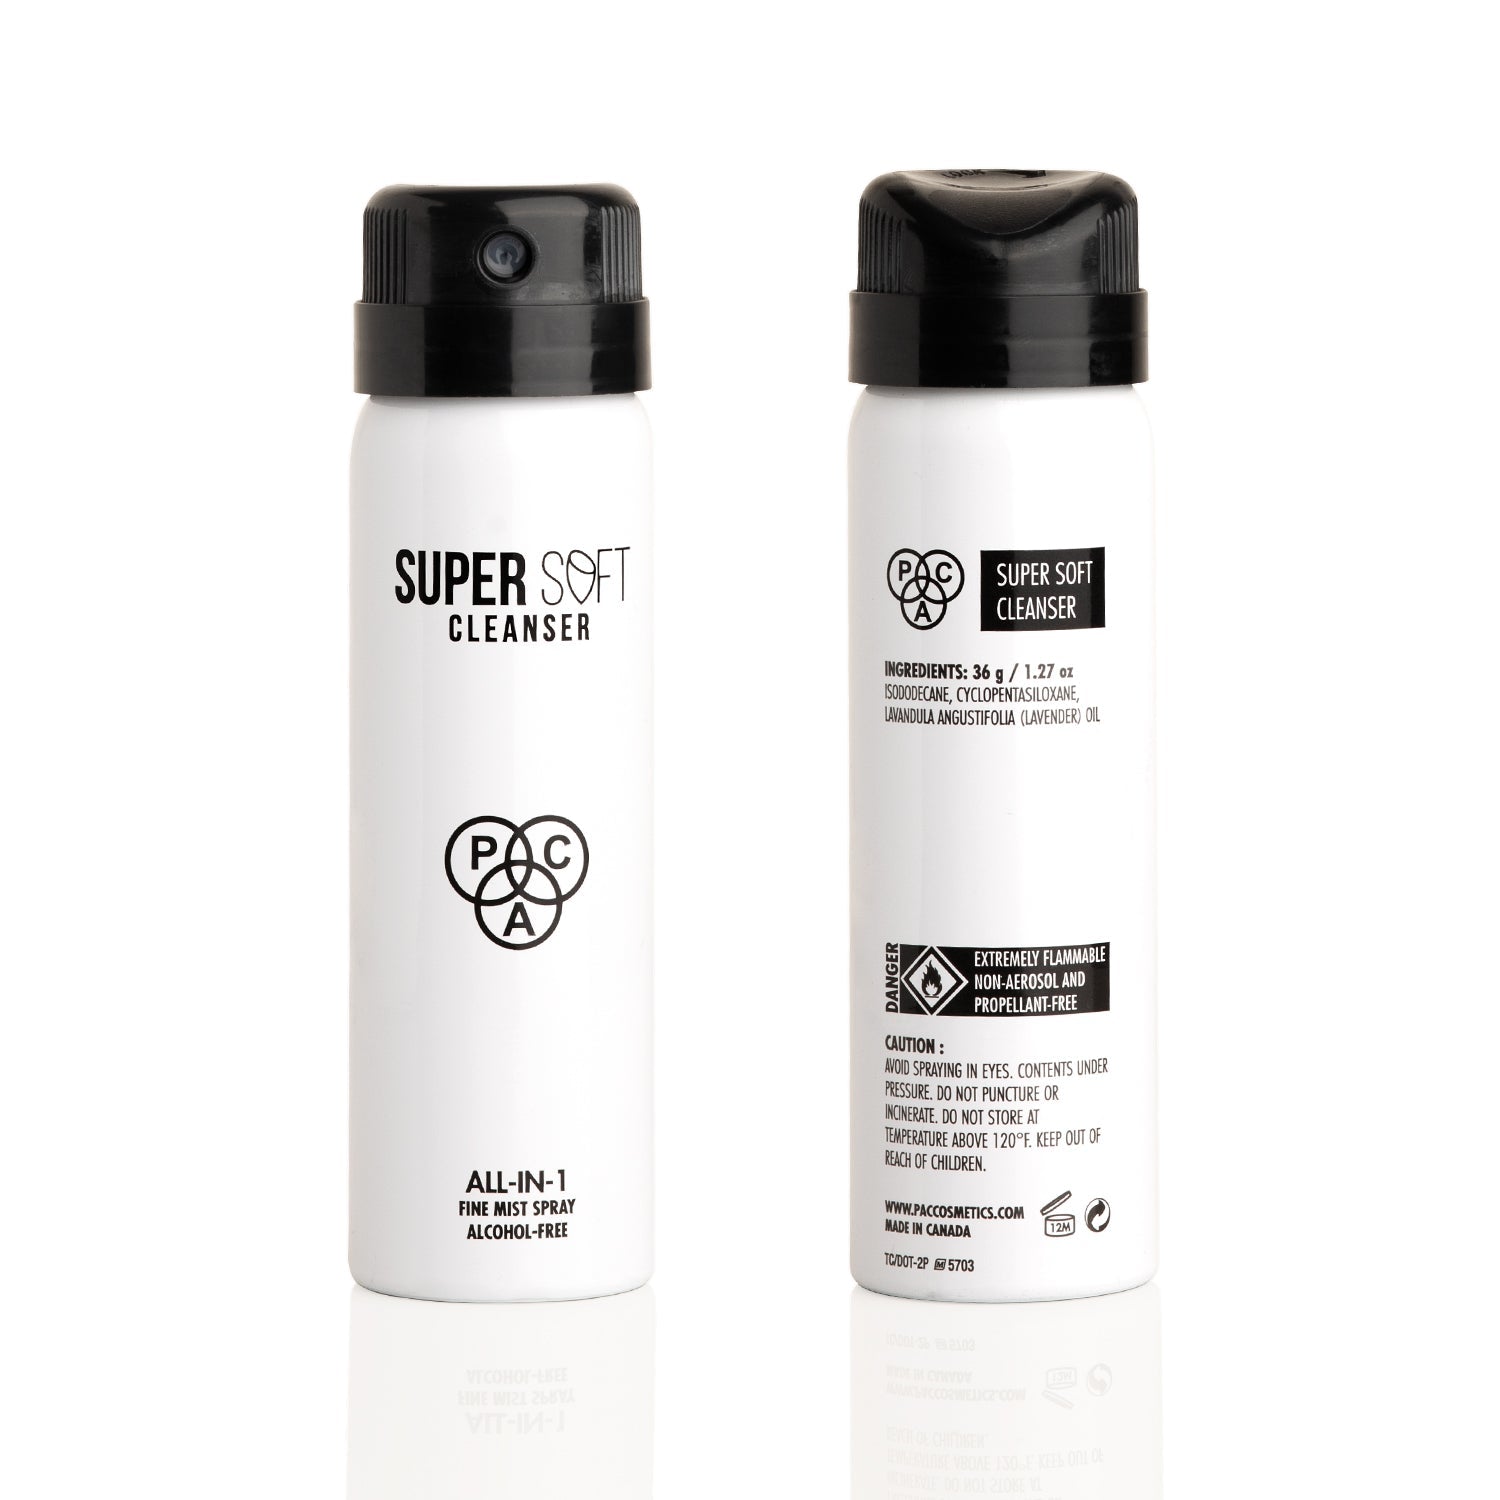 PAC Cosmetics Super Soft Cleanser (36 gm)